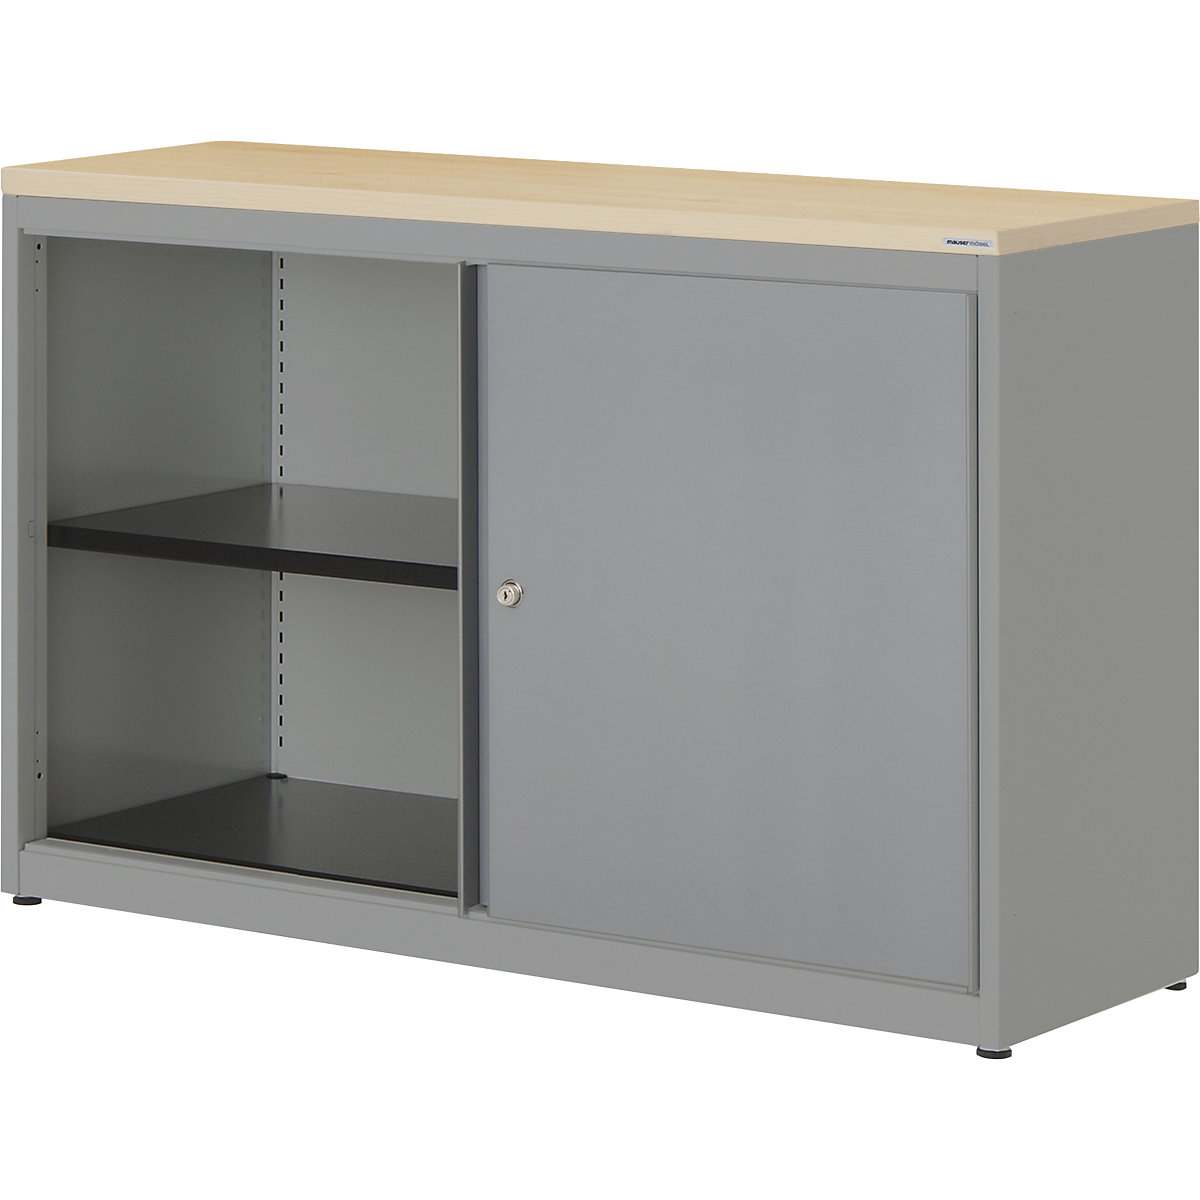 Sliding door cupboard – mauser, HxWxD 830 x 1200 x 432 mm, plastic panel, 1 shelf, white aluminium / white aluminium / maple-6